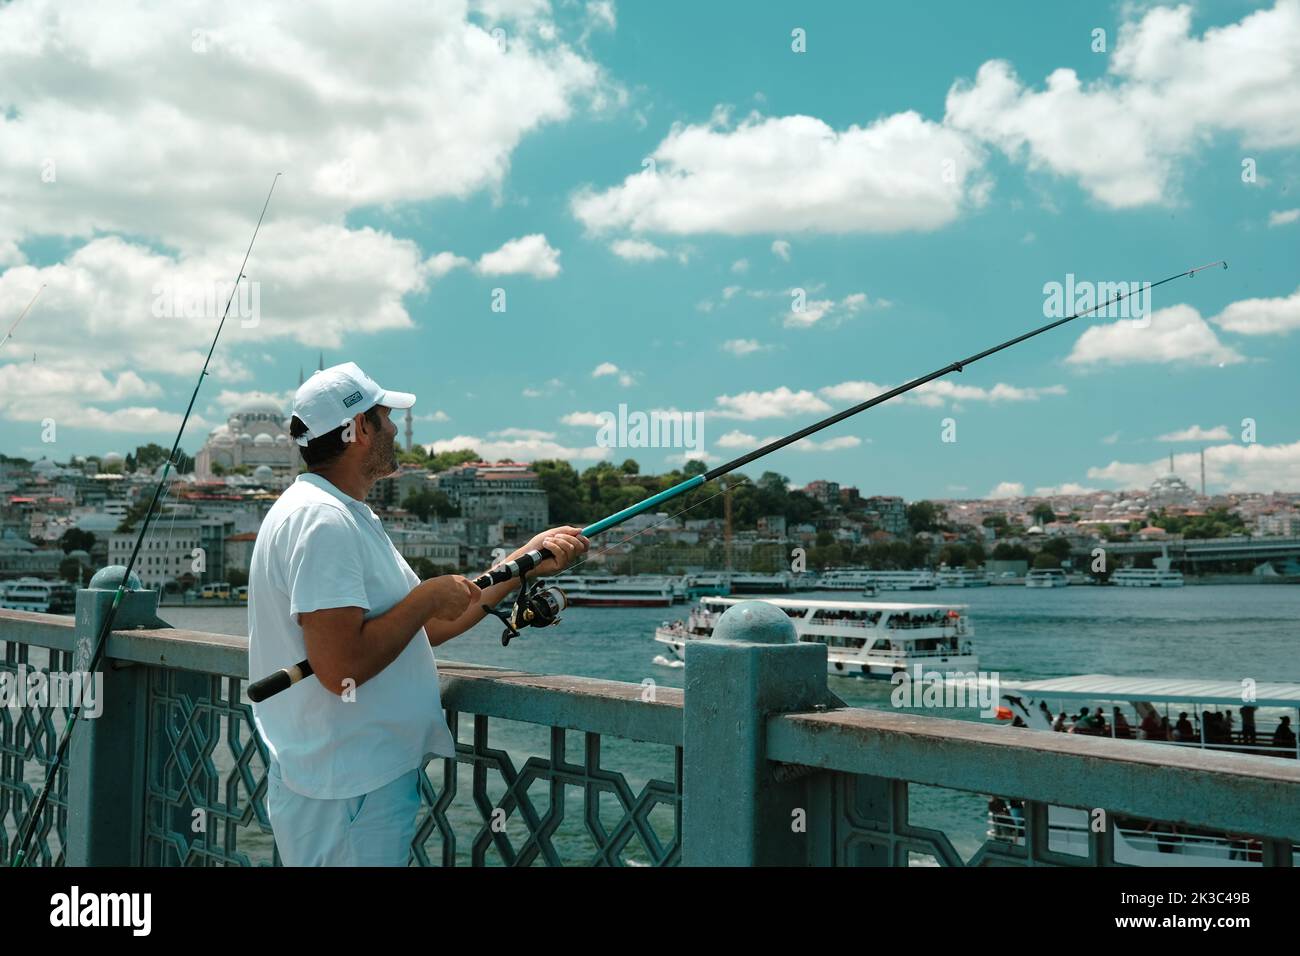 Pêcheur sur le pont Eminönü Galata, grand angle, temps nuageux, homme d'âge moyen en blanc, couleur rustique, concept de tourisme, passe-temps et loisirs Banque D'Images